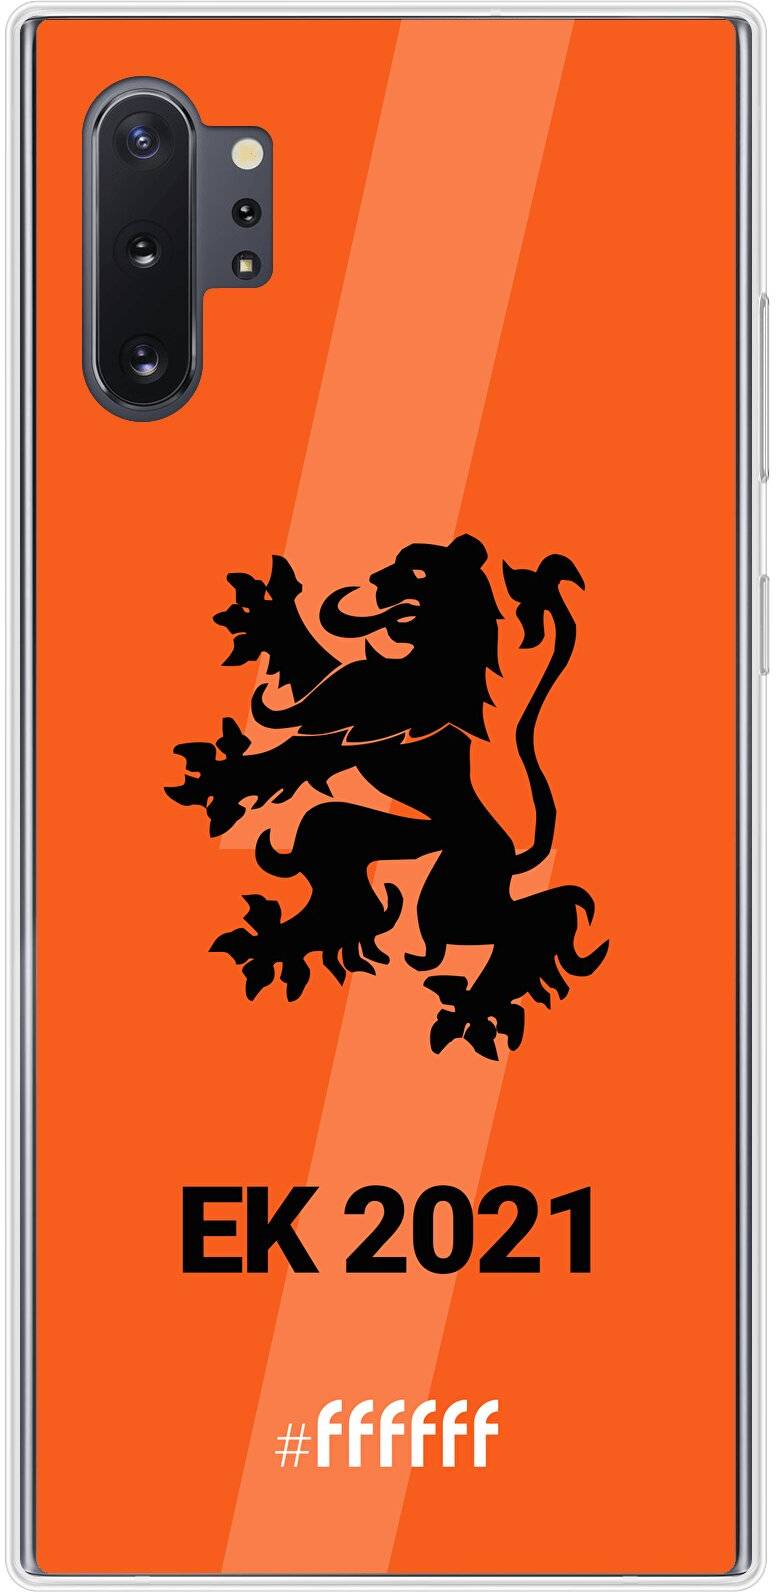 Nederlands Elftal - EK 2021 Galaxy Note 10 Plus